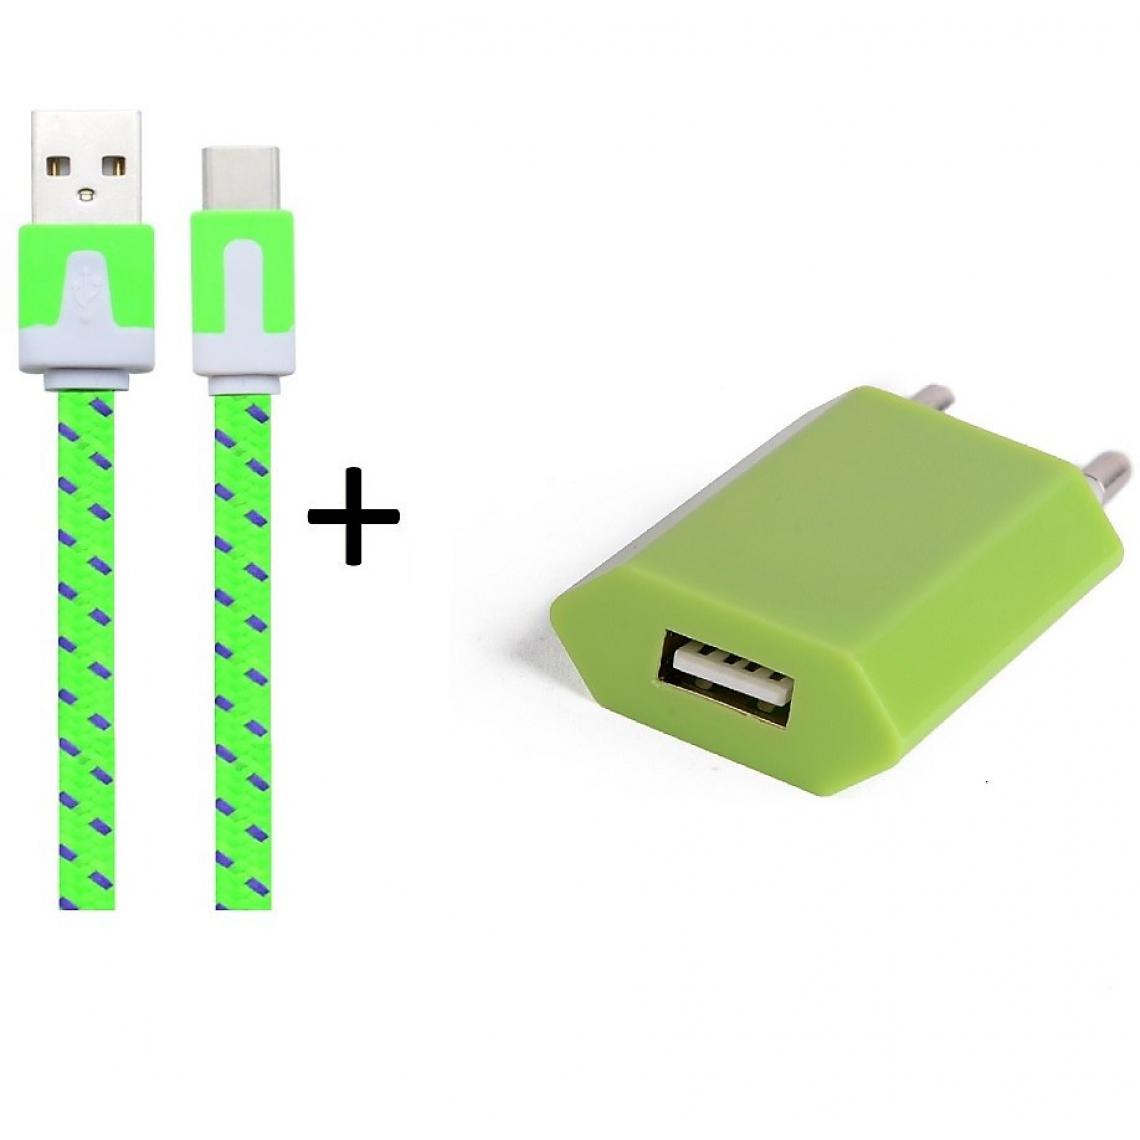 Shot - Pack Chargeur pour OPPO Find X Smartphone Type C (Cable Noodle 1m Chargeur + Prise Secteur USB) Murale Android (VERT) - Chargeur secteur téléphone